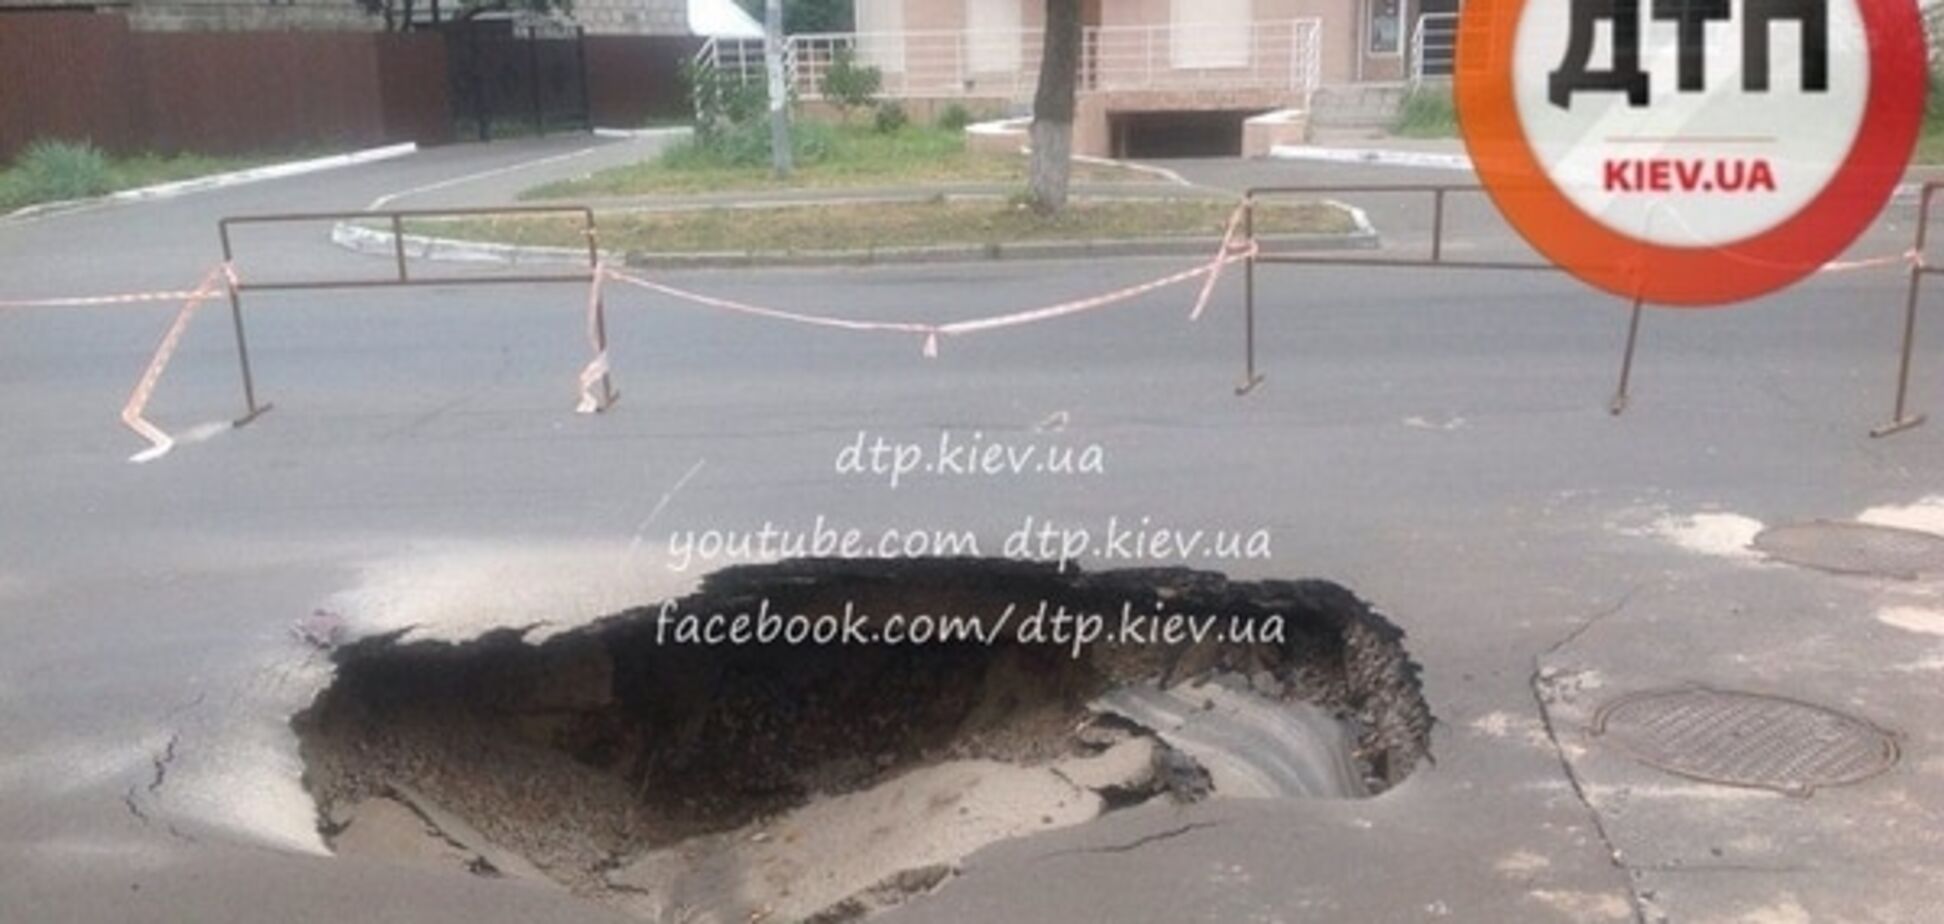 В Киеве на Борщаговке провалился асфальт: фото глубокой ямы